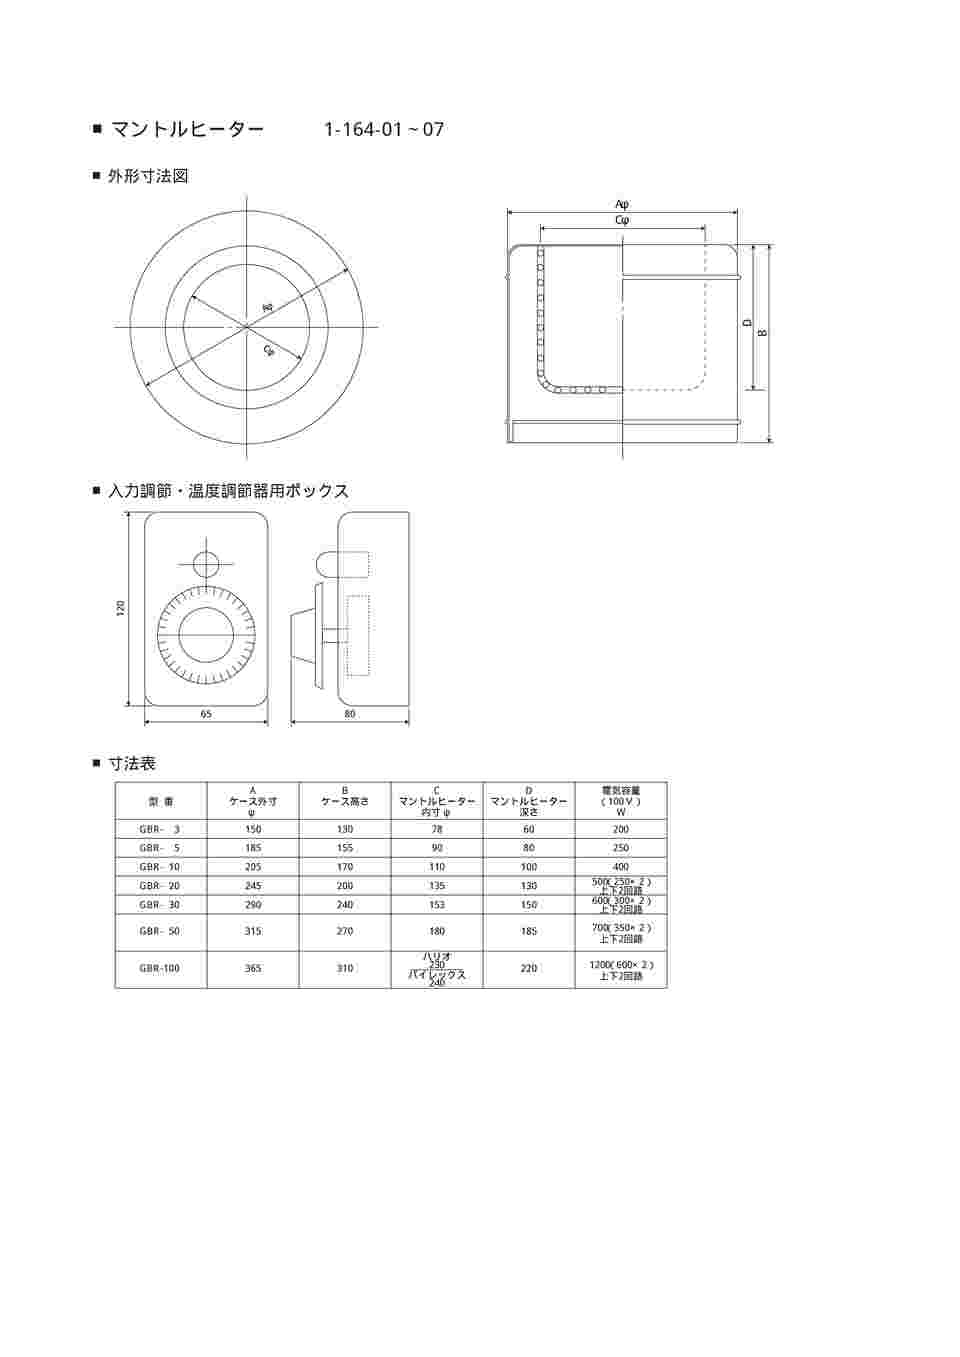 1-164-02 マントルヒーター入力調節器付き(ビーカー用) GBR-5 【AXEL